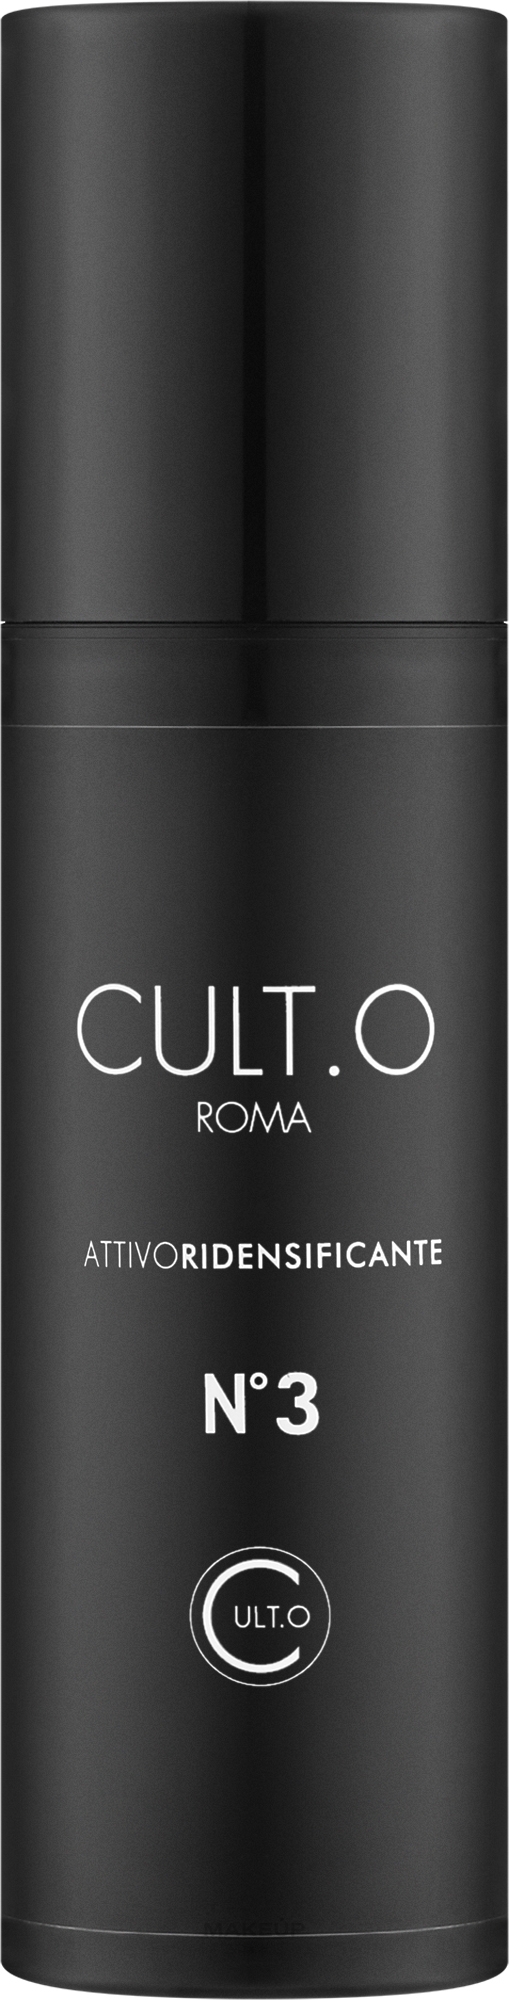 Koncentrat zwiększający objętość włosów - Cult.O Roma Attivo Ridensificante №3 — Zdjęcie 50 ml